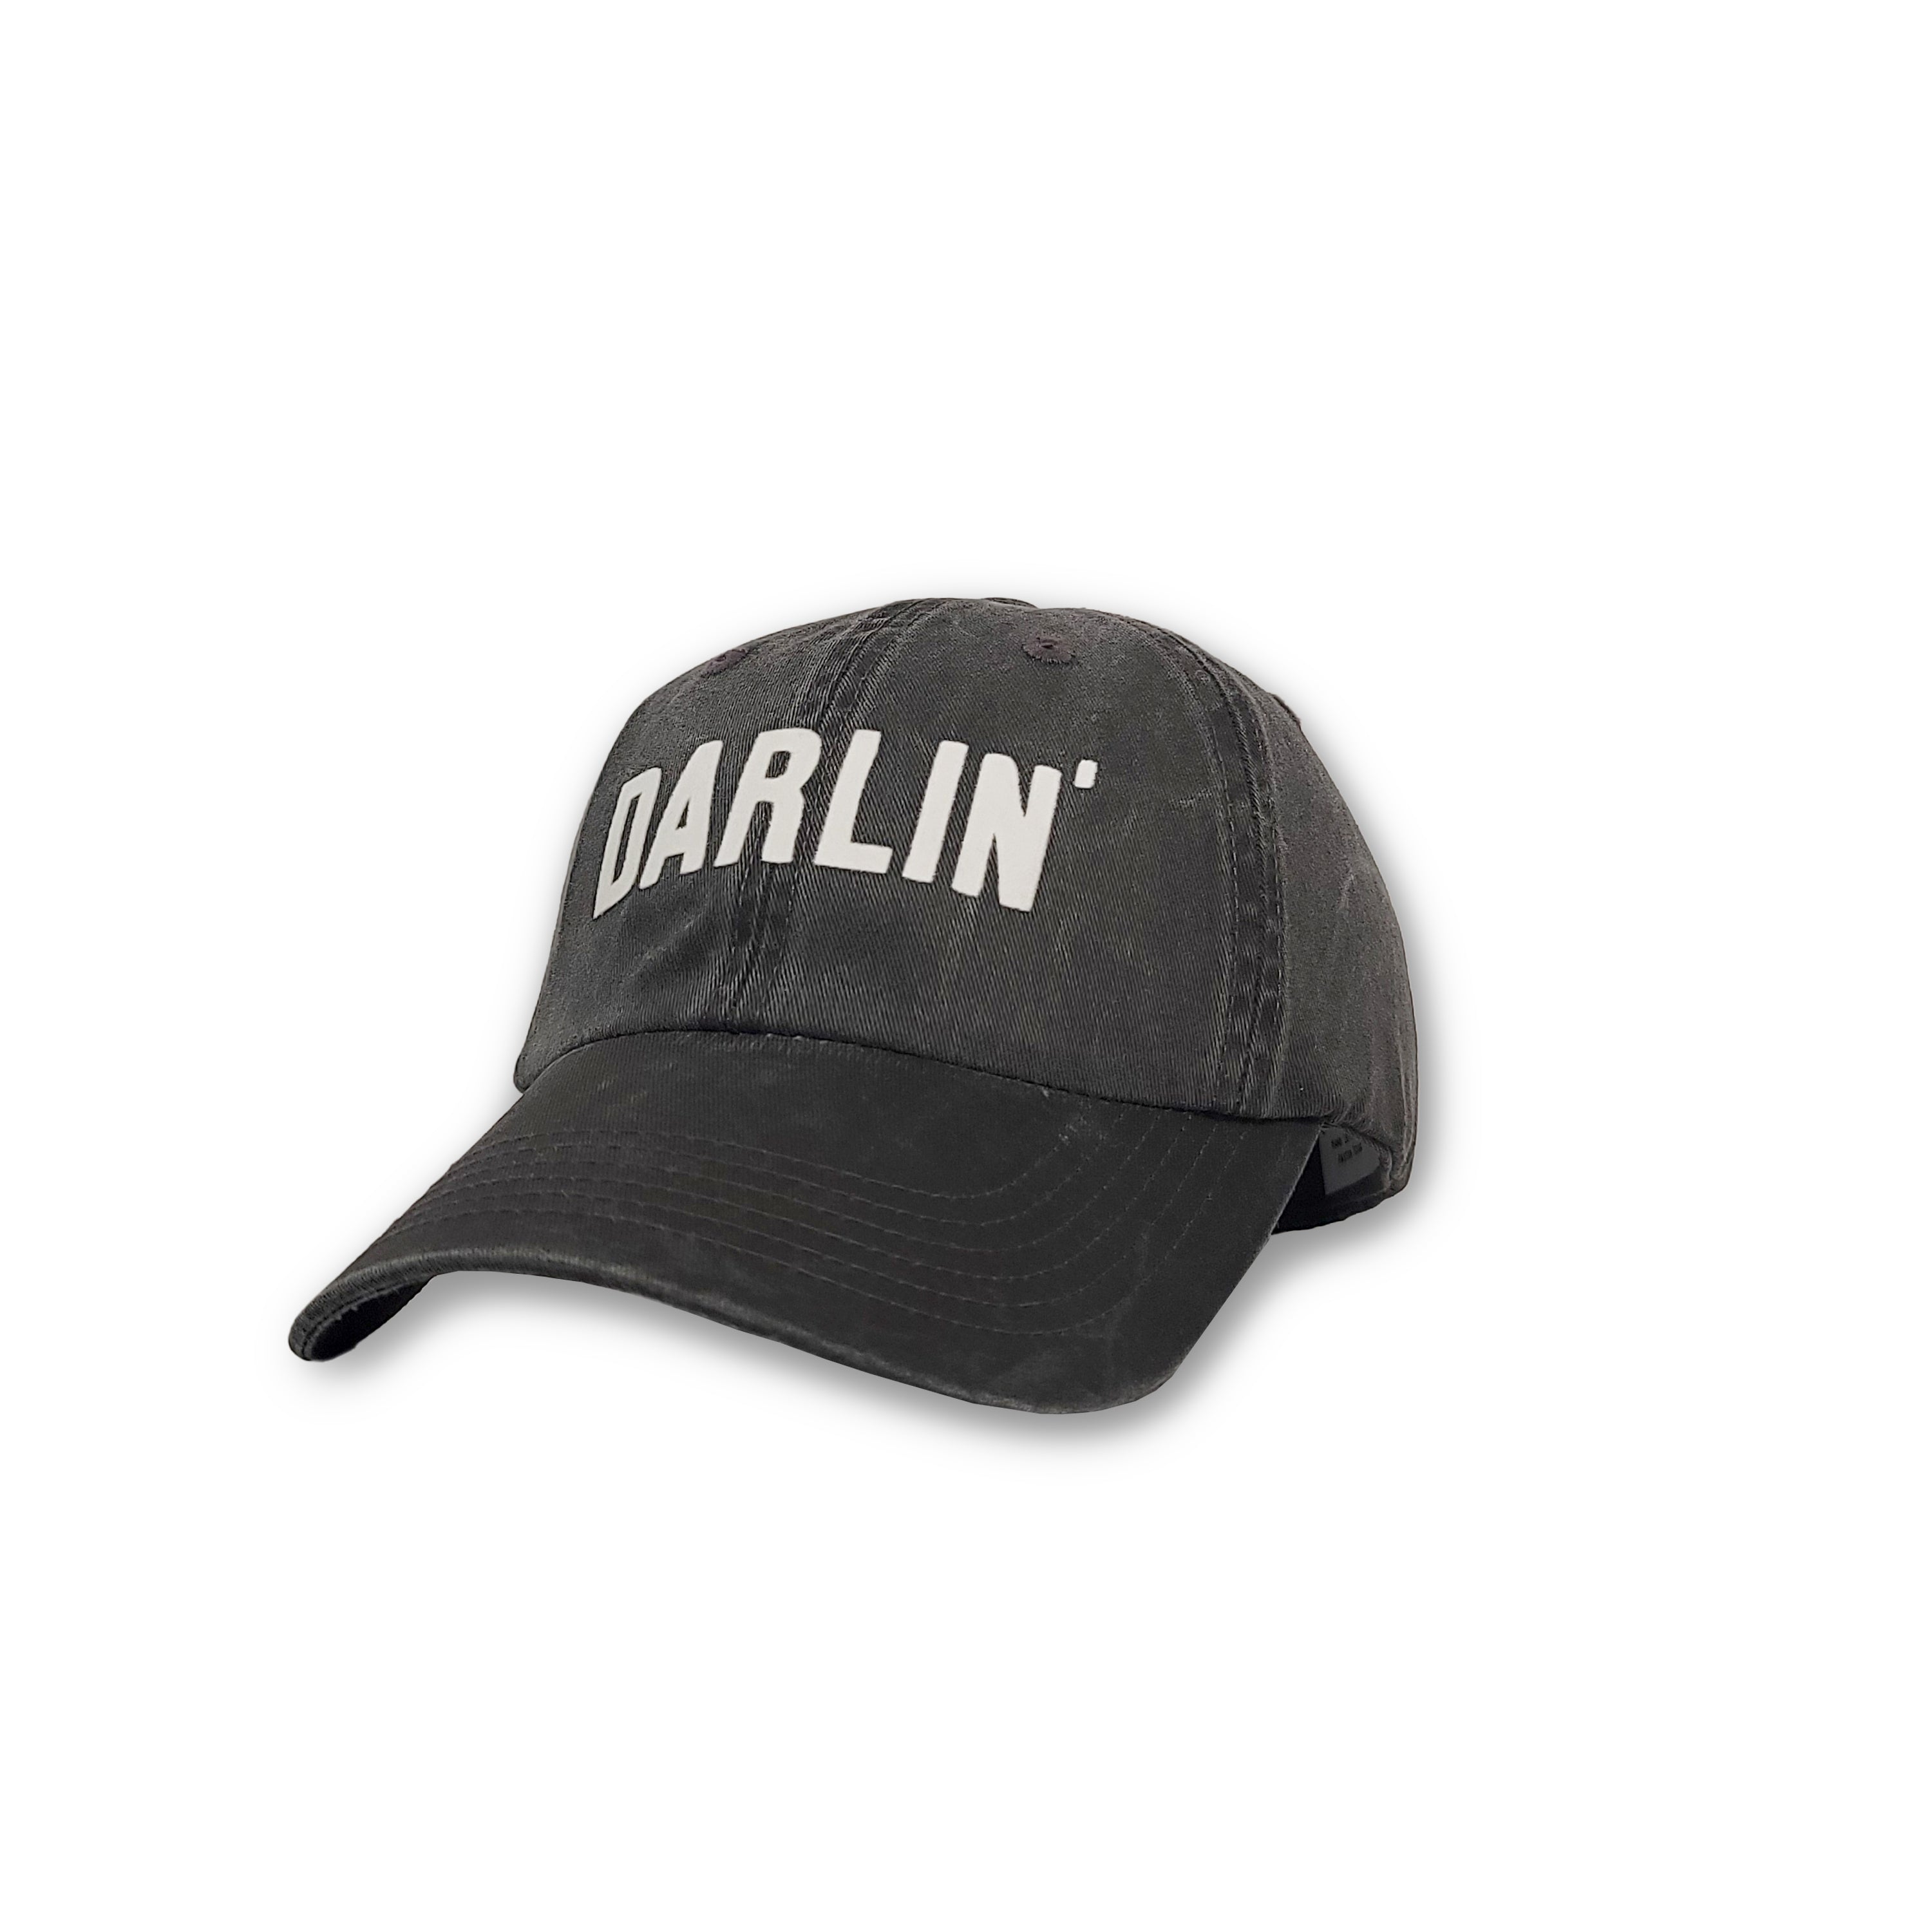 Darlin' block hat by Frankie Jean